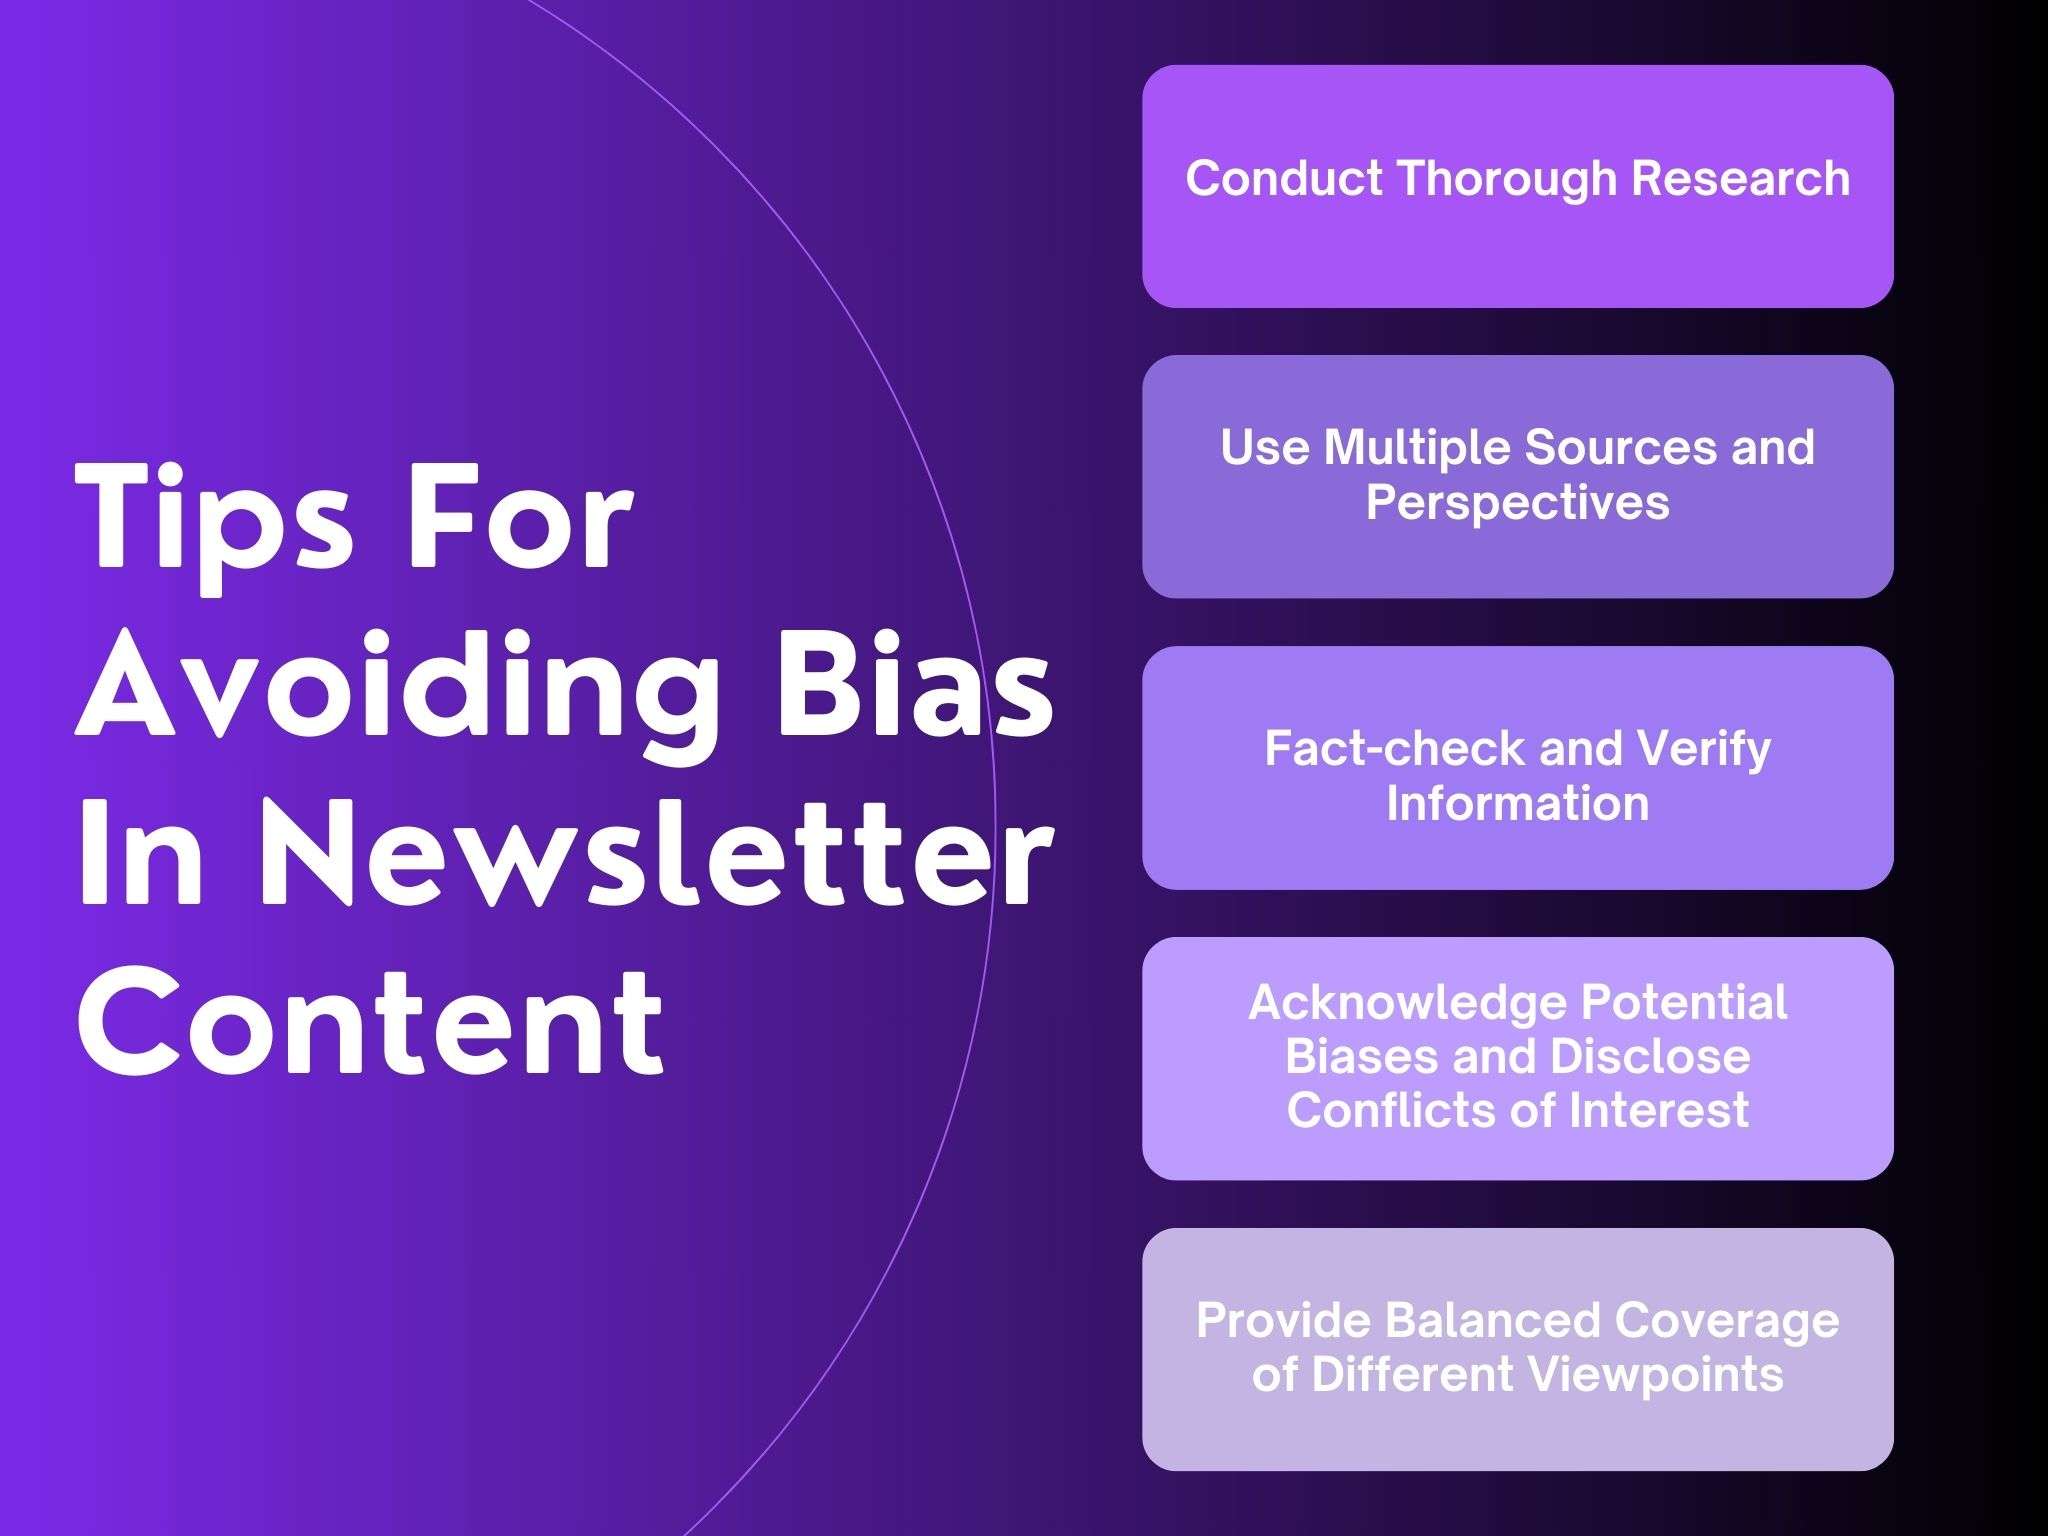 Tips for Avoiding Bias in Newsletter Content